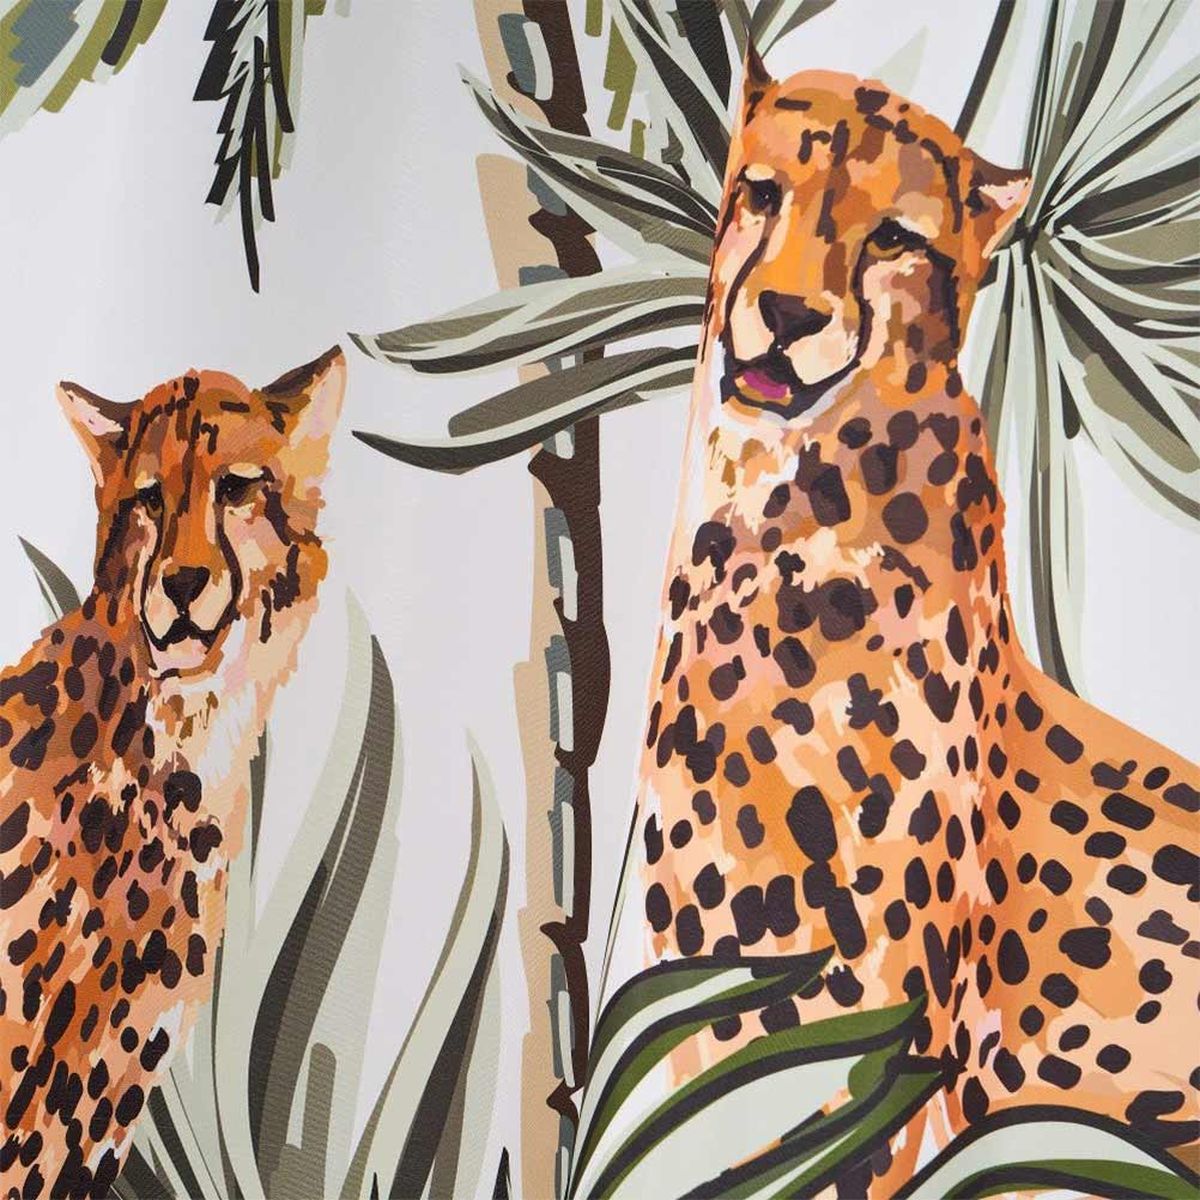 Jaguars shower curtain 180 x 200 cm